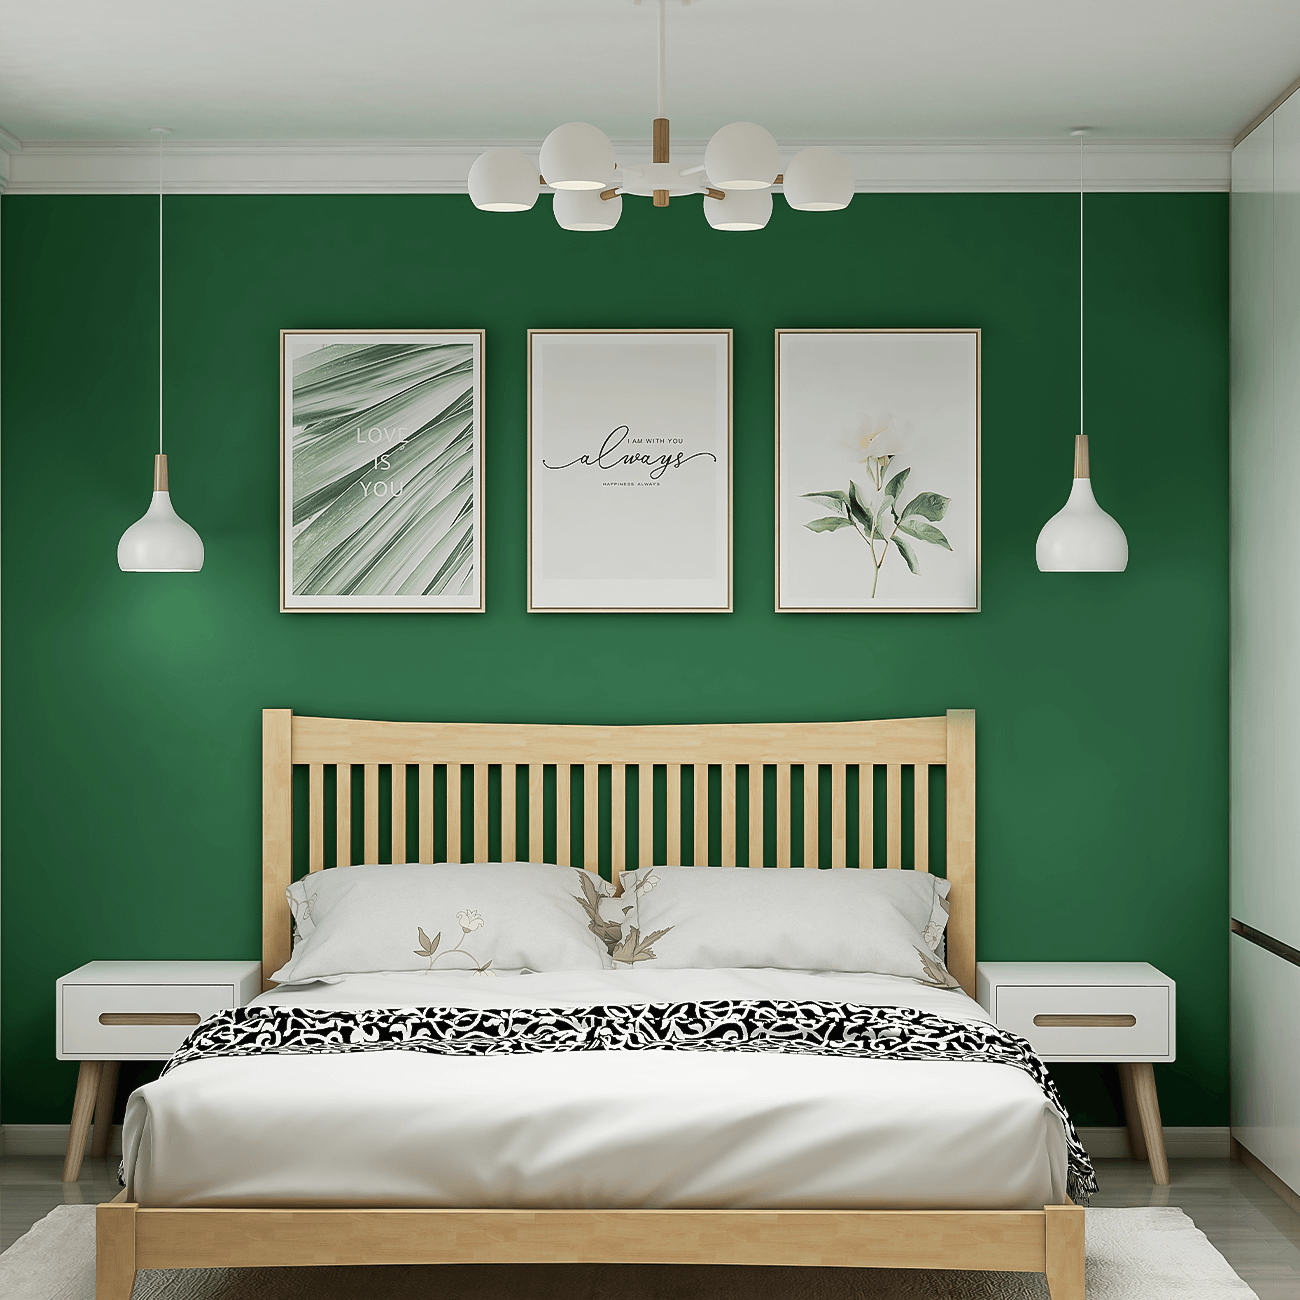 主卧为夫妻二人居住，背景墙用了翡翠绿，搭配北欧自然风的挂画，烘托了居室的清新。这种绿色让人眼前一亮，有了大自然的诗意感，心情舒畅。